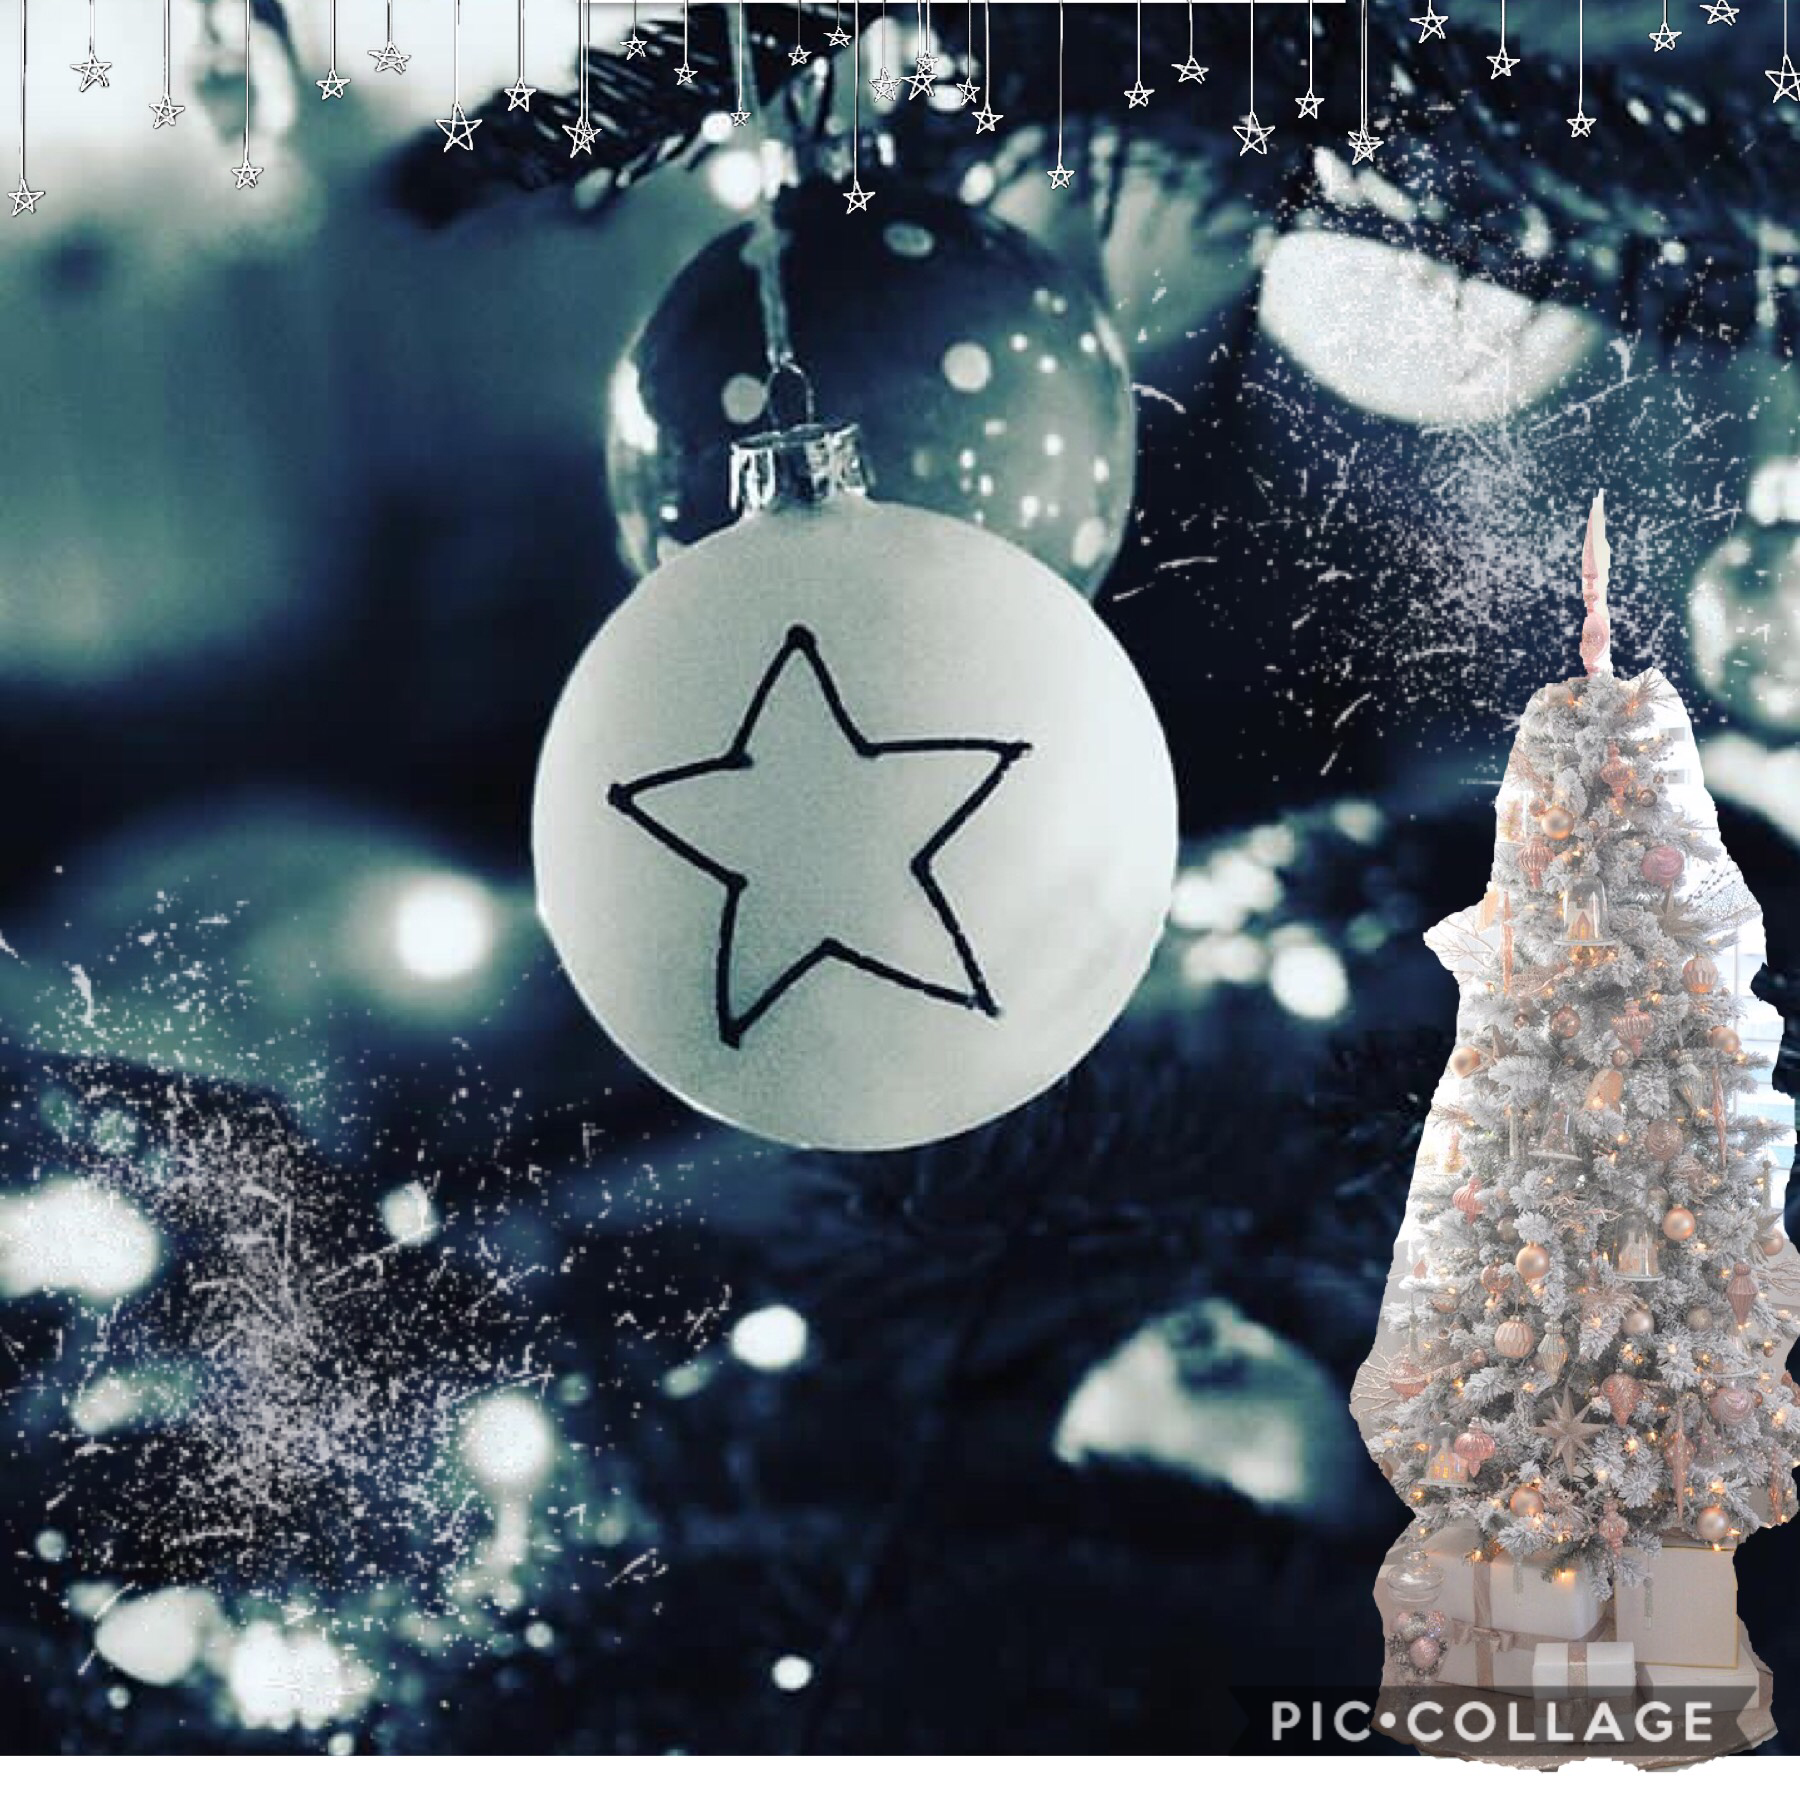 Merry Christmas💖♾🎄🎄🎄ein schönes unvergessliches Weihnachten wünsche ich euch😇